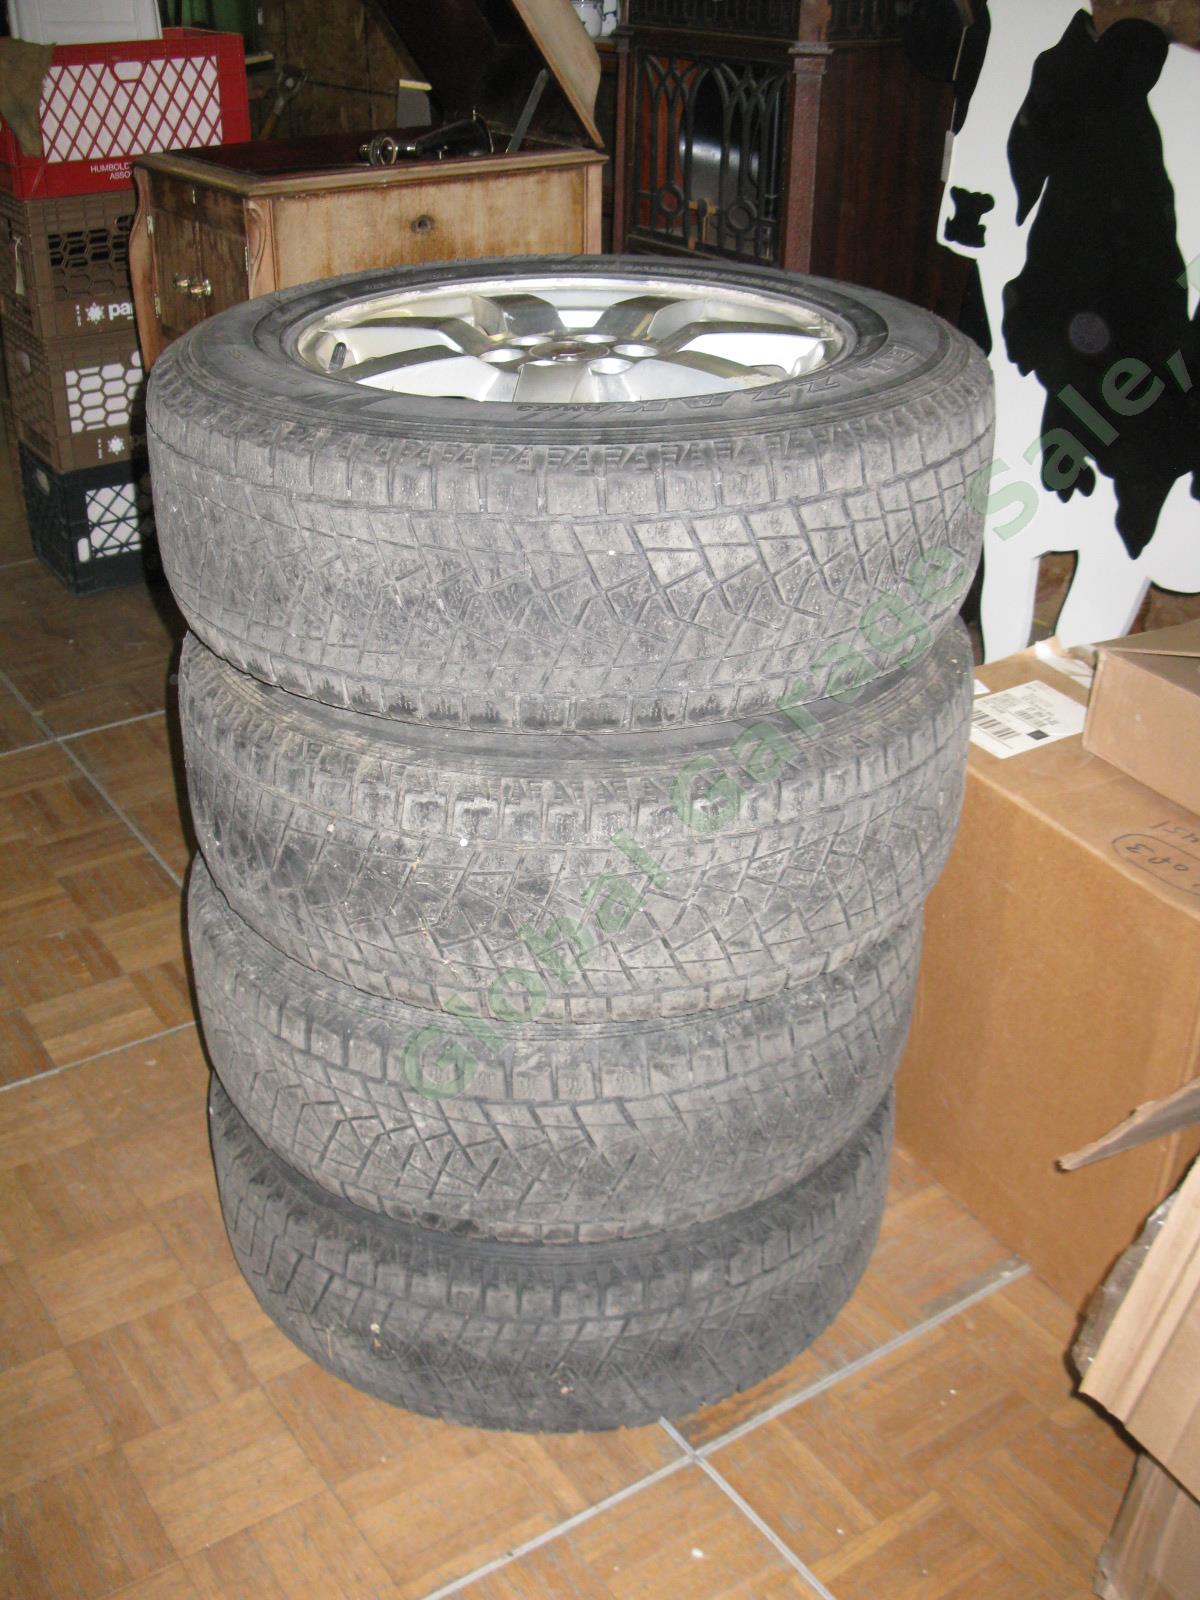 4 17"x 7.5" Rims Wheels + Bridgestone Blizzak 235/65/R17 Snow Tires Cadillac SRX 2